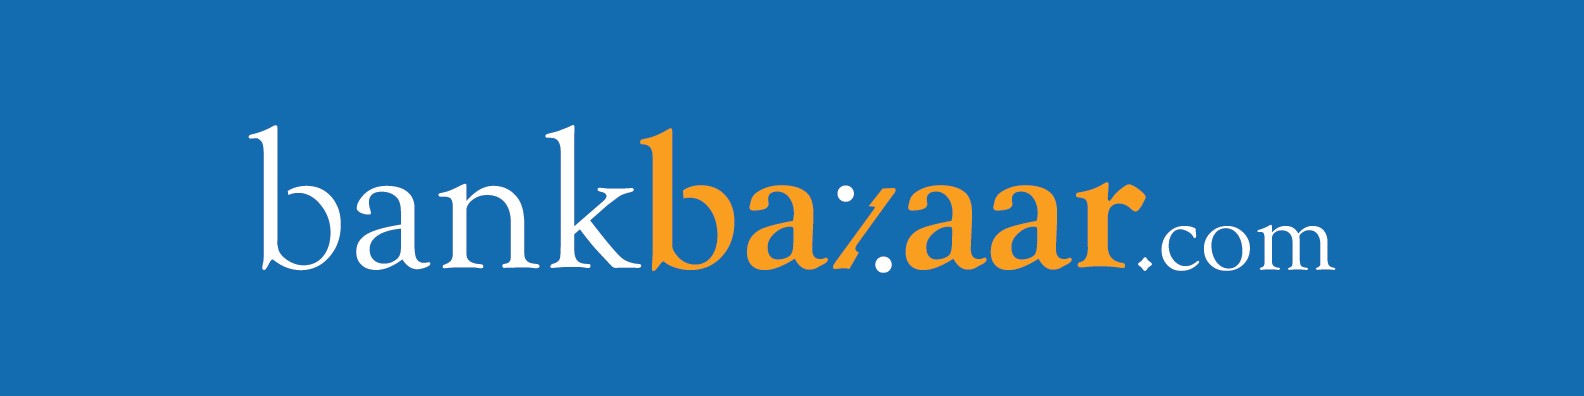 Bank Bazaar